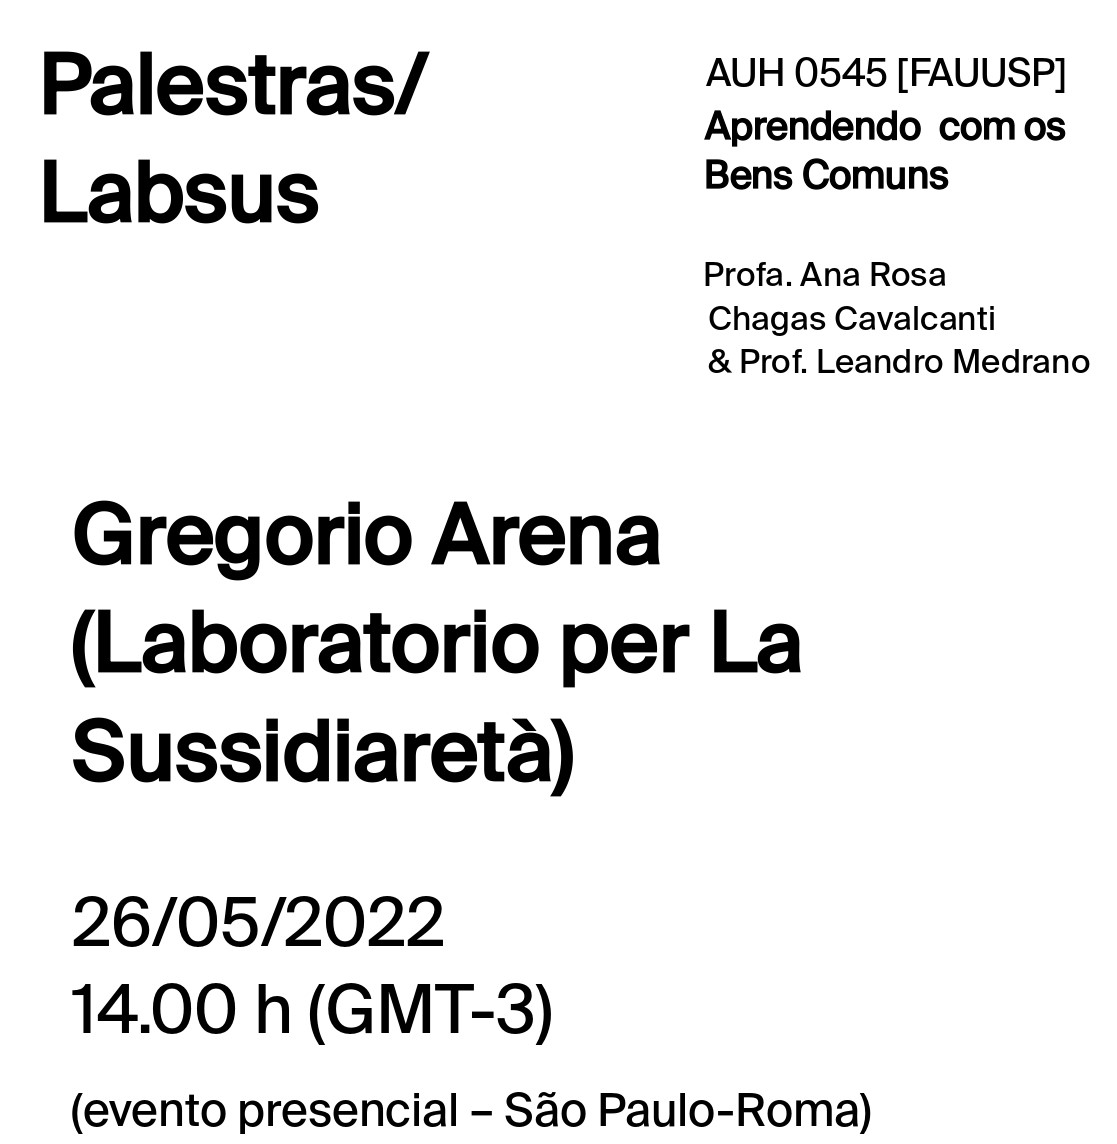 Palestra Gegorio Arena - Lecture Gregorio Arena